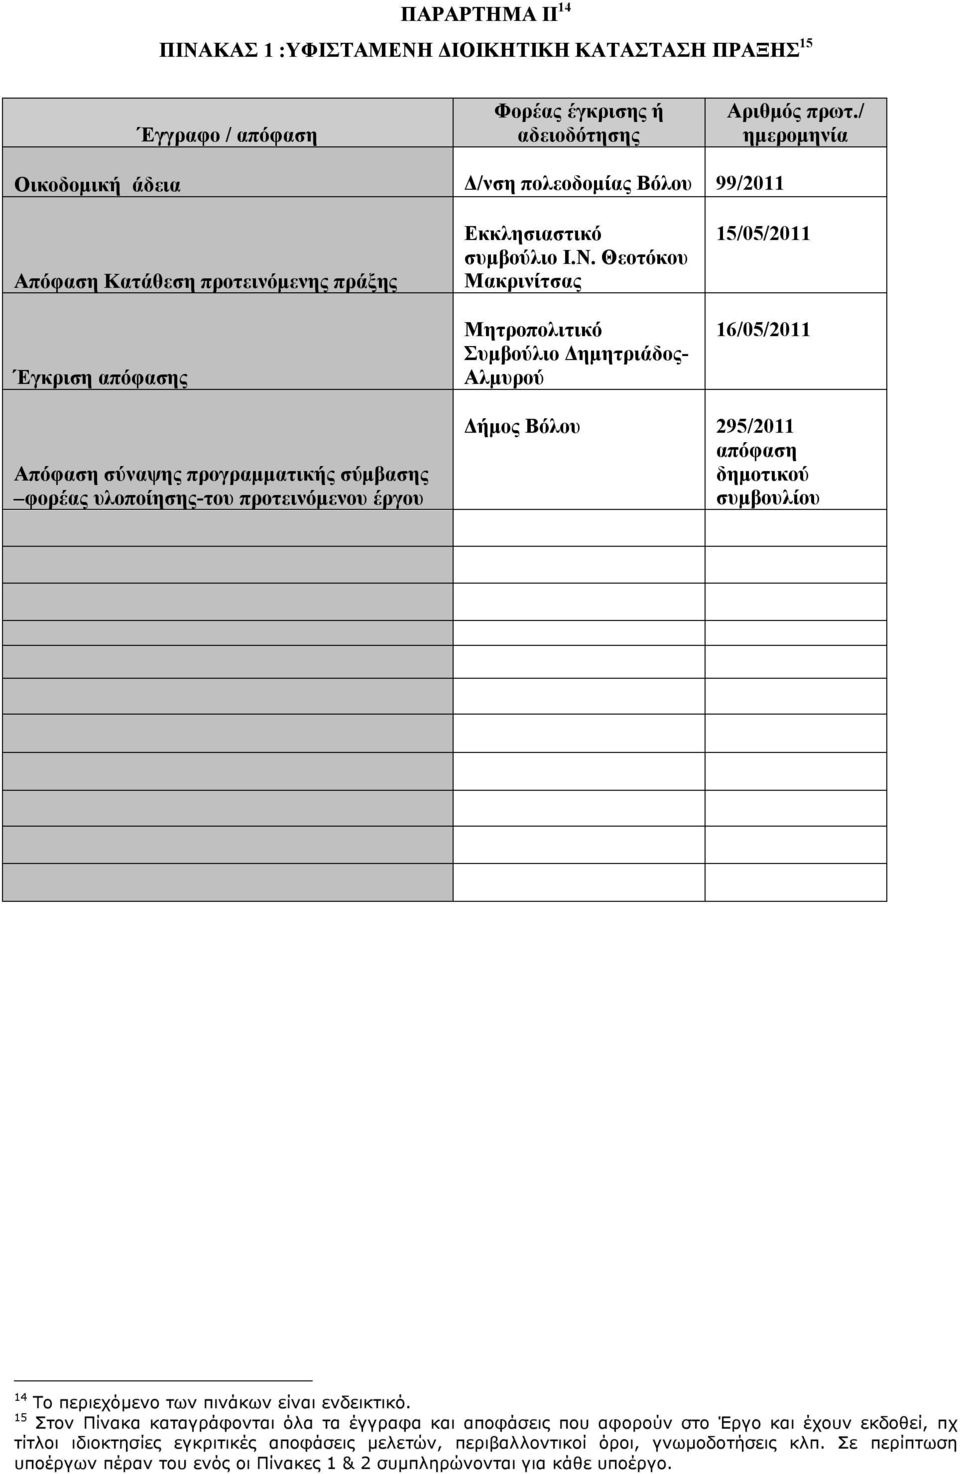 Θεοτόκου Μακρινίτσας Μητροπολιτικό Συμβούλιο Δημητριάδος- Αλμυρού 15/05/2011 16/05/2011 Απόφαση σύναψης προγραμματικής σύμβασης φορέας υλοποίησης-του προτεινόμενου έργου Δήμος Βόλου 295/2011 απόφαση